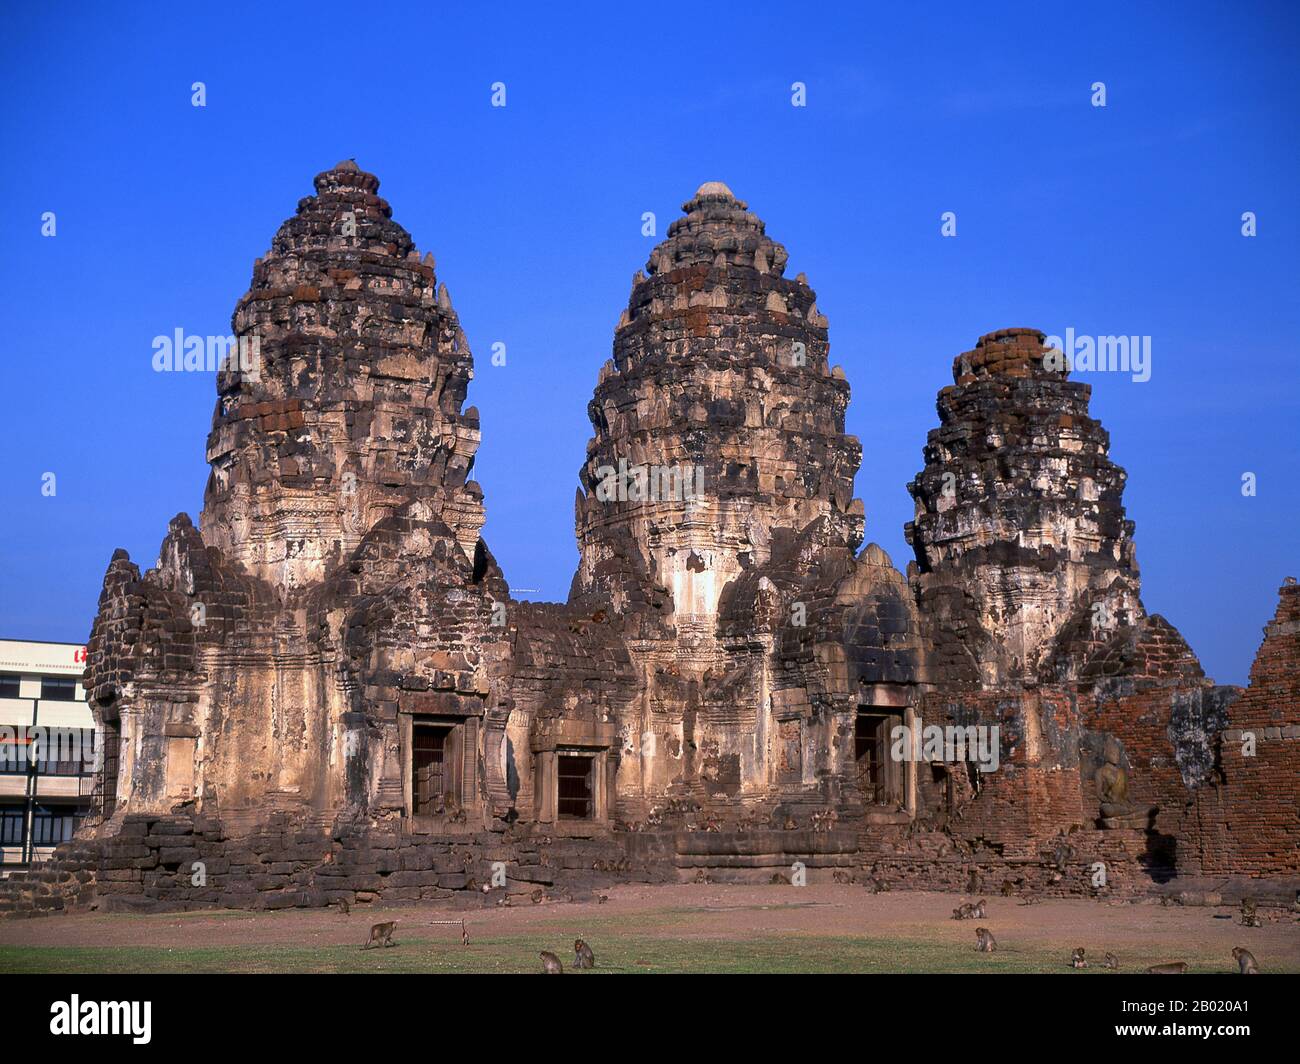 Thailand: Der Prang Sam Yot aus dem 13. Jahrhundert, ursprünglich ein Khmer-Hindu-Schrein, hat drei Zacken, die früher Brahma, Vishnu und Shiva (die Hindu-trinität) repräsentierten. Es wurde später in einen buddhistischen Schrein umgewandelt. Die Altstadt von Lopburi stammt aus der Dvaravati-Ära (6. - 13. Jahrhundert). Es war ursprünglich als Lavo oder Lavapura bekannt. Nach der Gründung des Königreichs Ayutthaya im fünfzehnten Jahrhundert war Lopburi eine Festung der Herrscher Ayutthayas. Es wurde später eine neue königliche Hauptstadt während der Herrschaft von König Narai dem Großen des Ayutthaya-Königreichs in der Mitte des 17. Jahrhunderts. Stockfoto